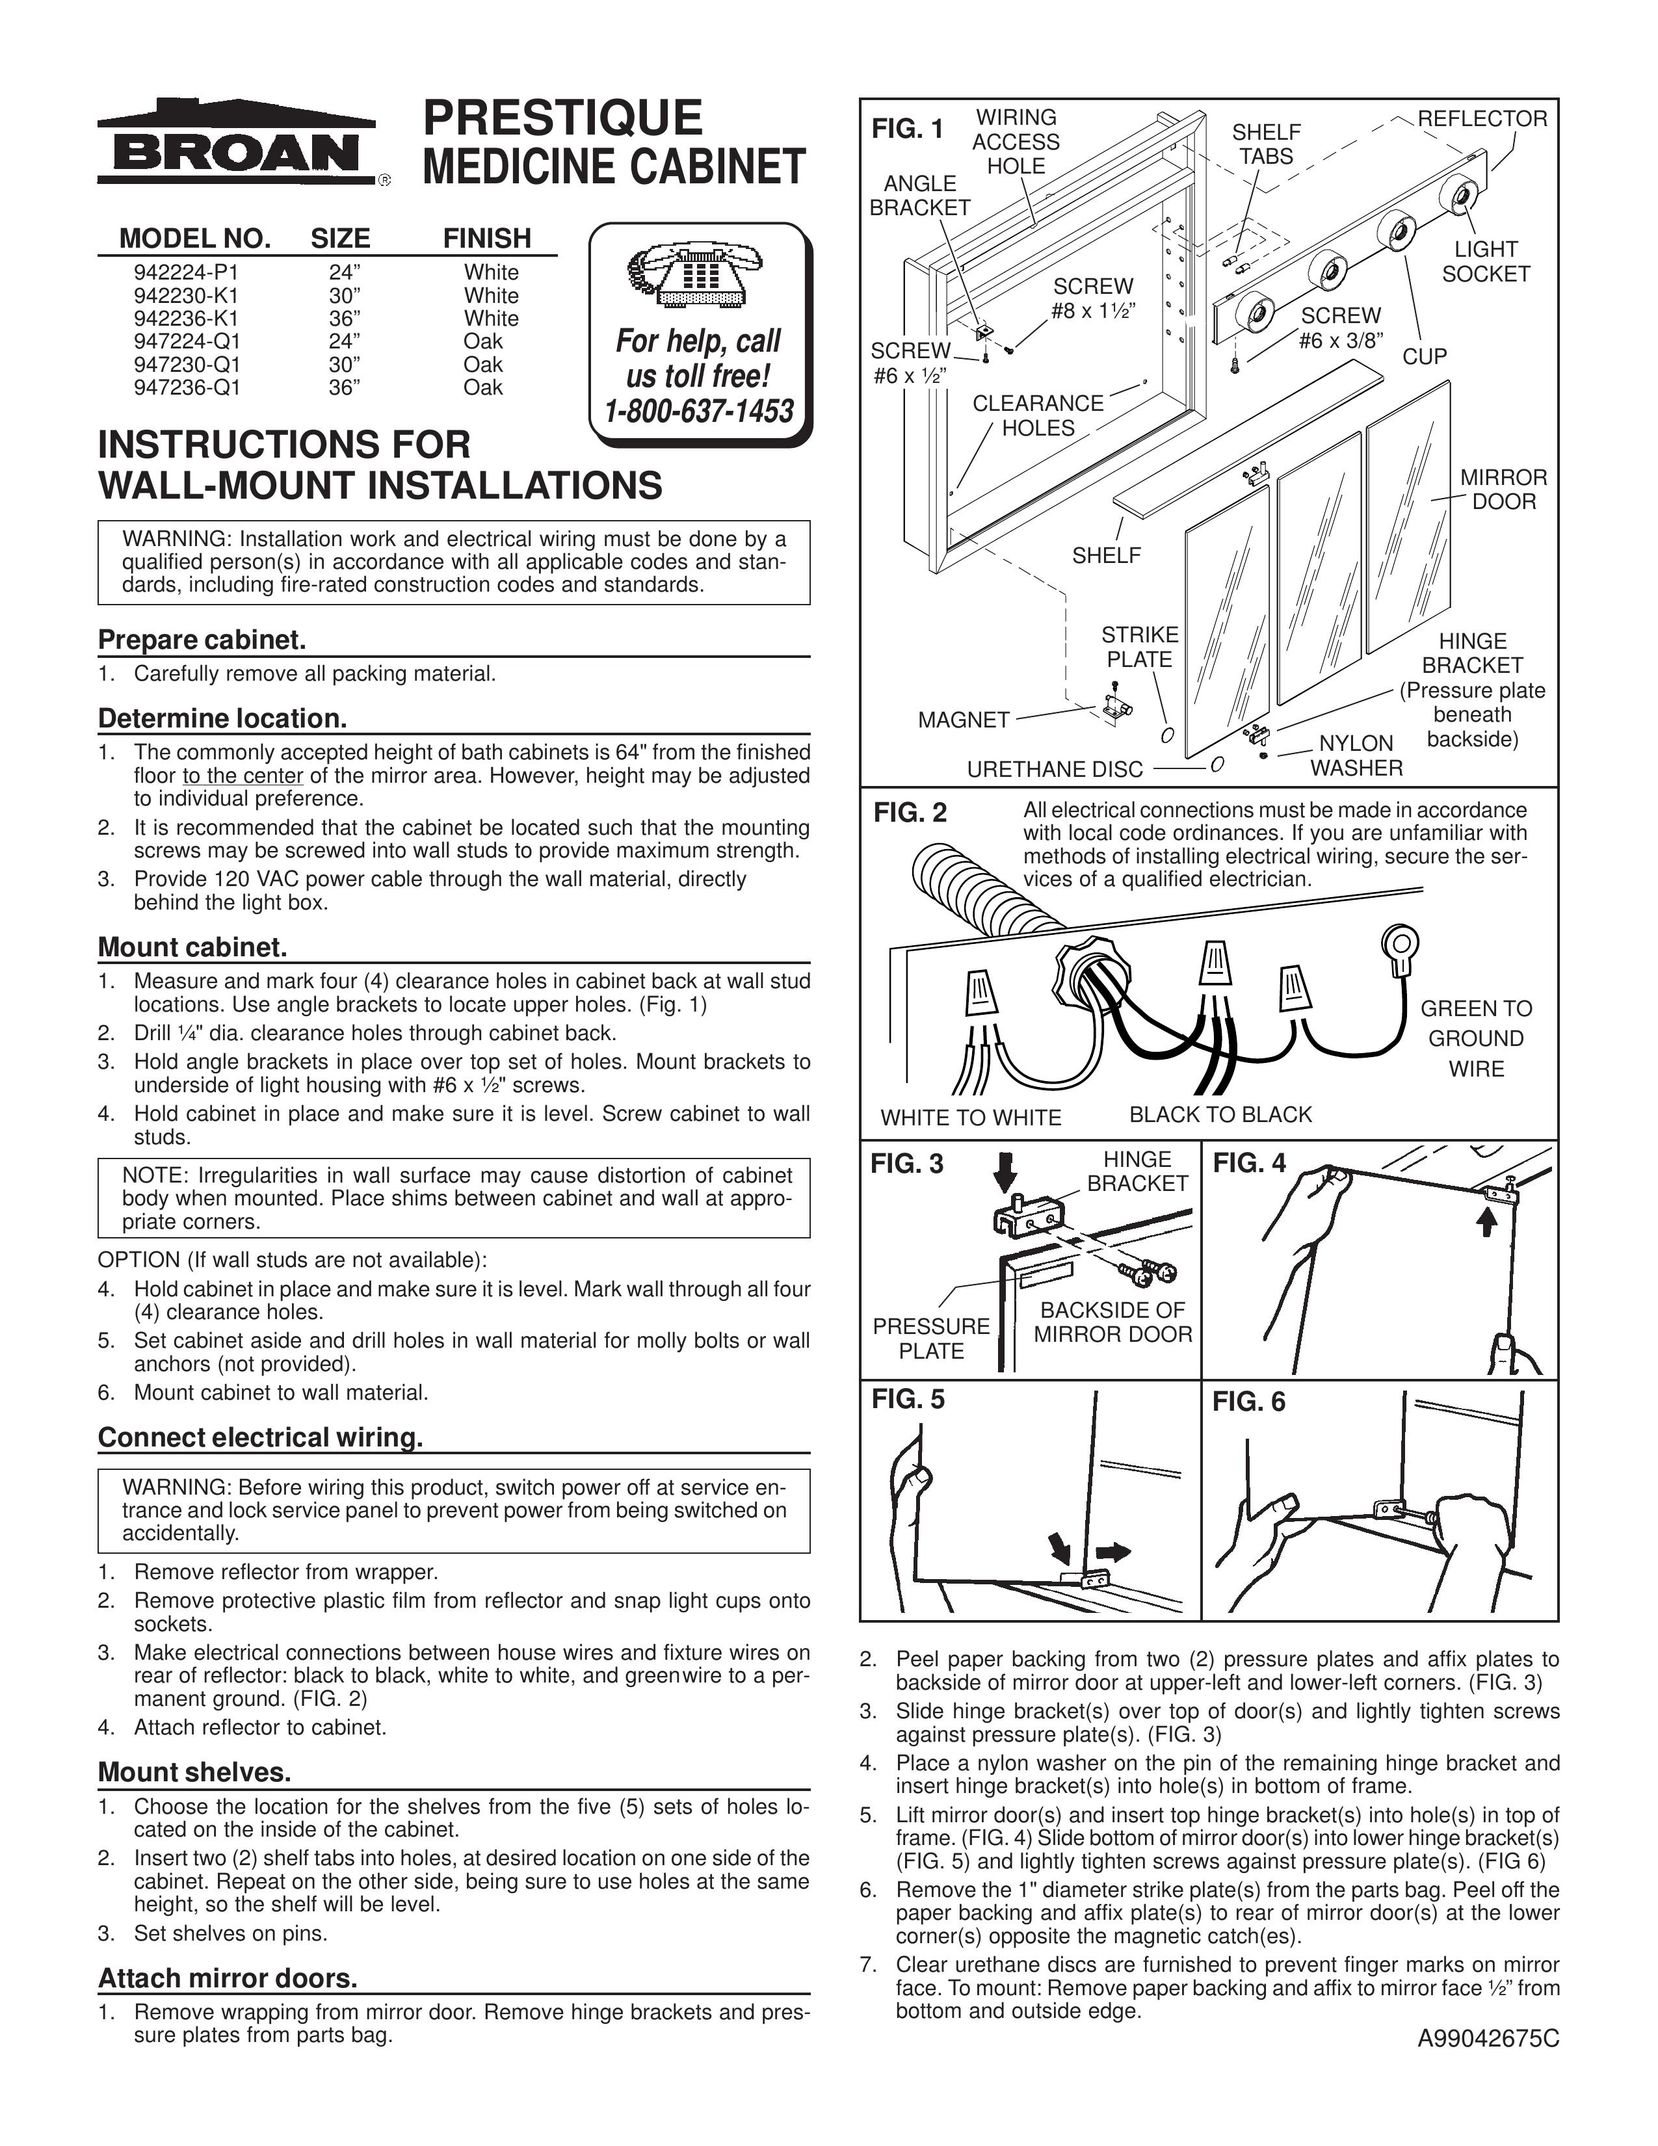 Broan 947230-Q1 TV Mount User Manual